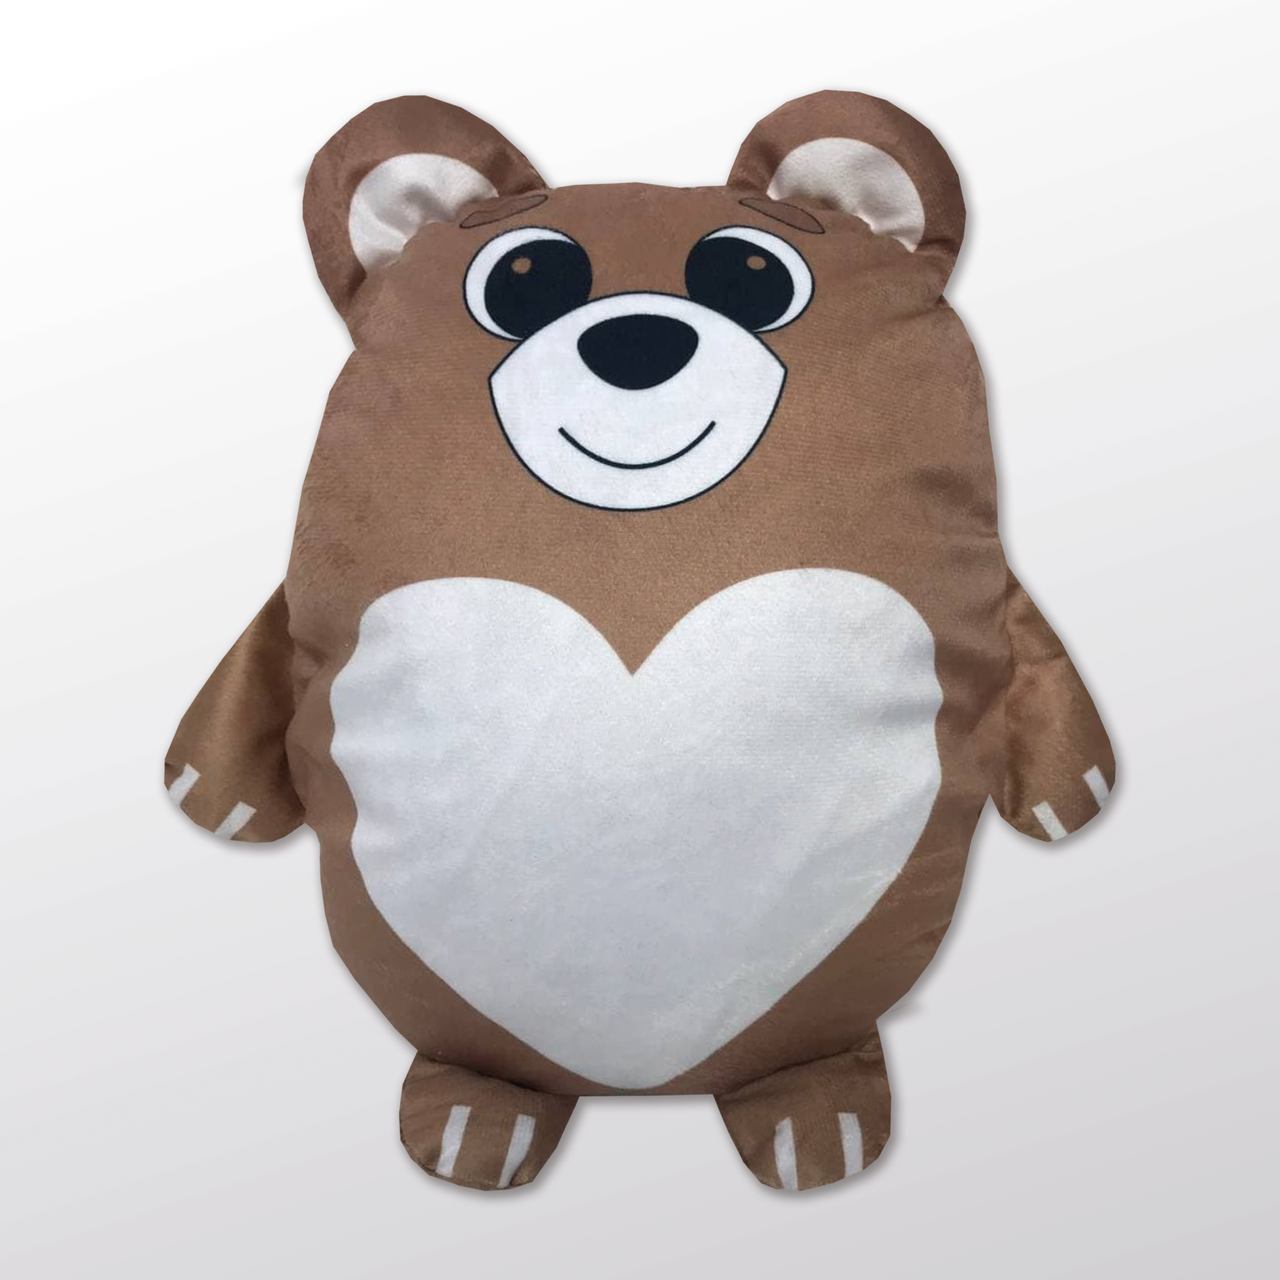 Подушка-іграшка «Ведмежа 202201» плюшева з місцем для сублімації - серце. Колір коричневий.